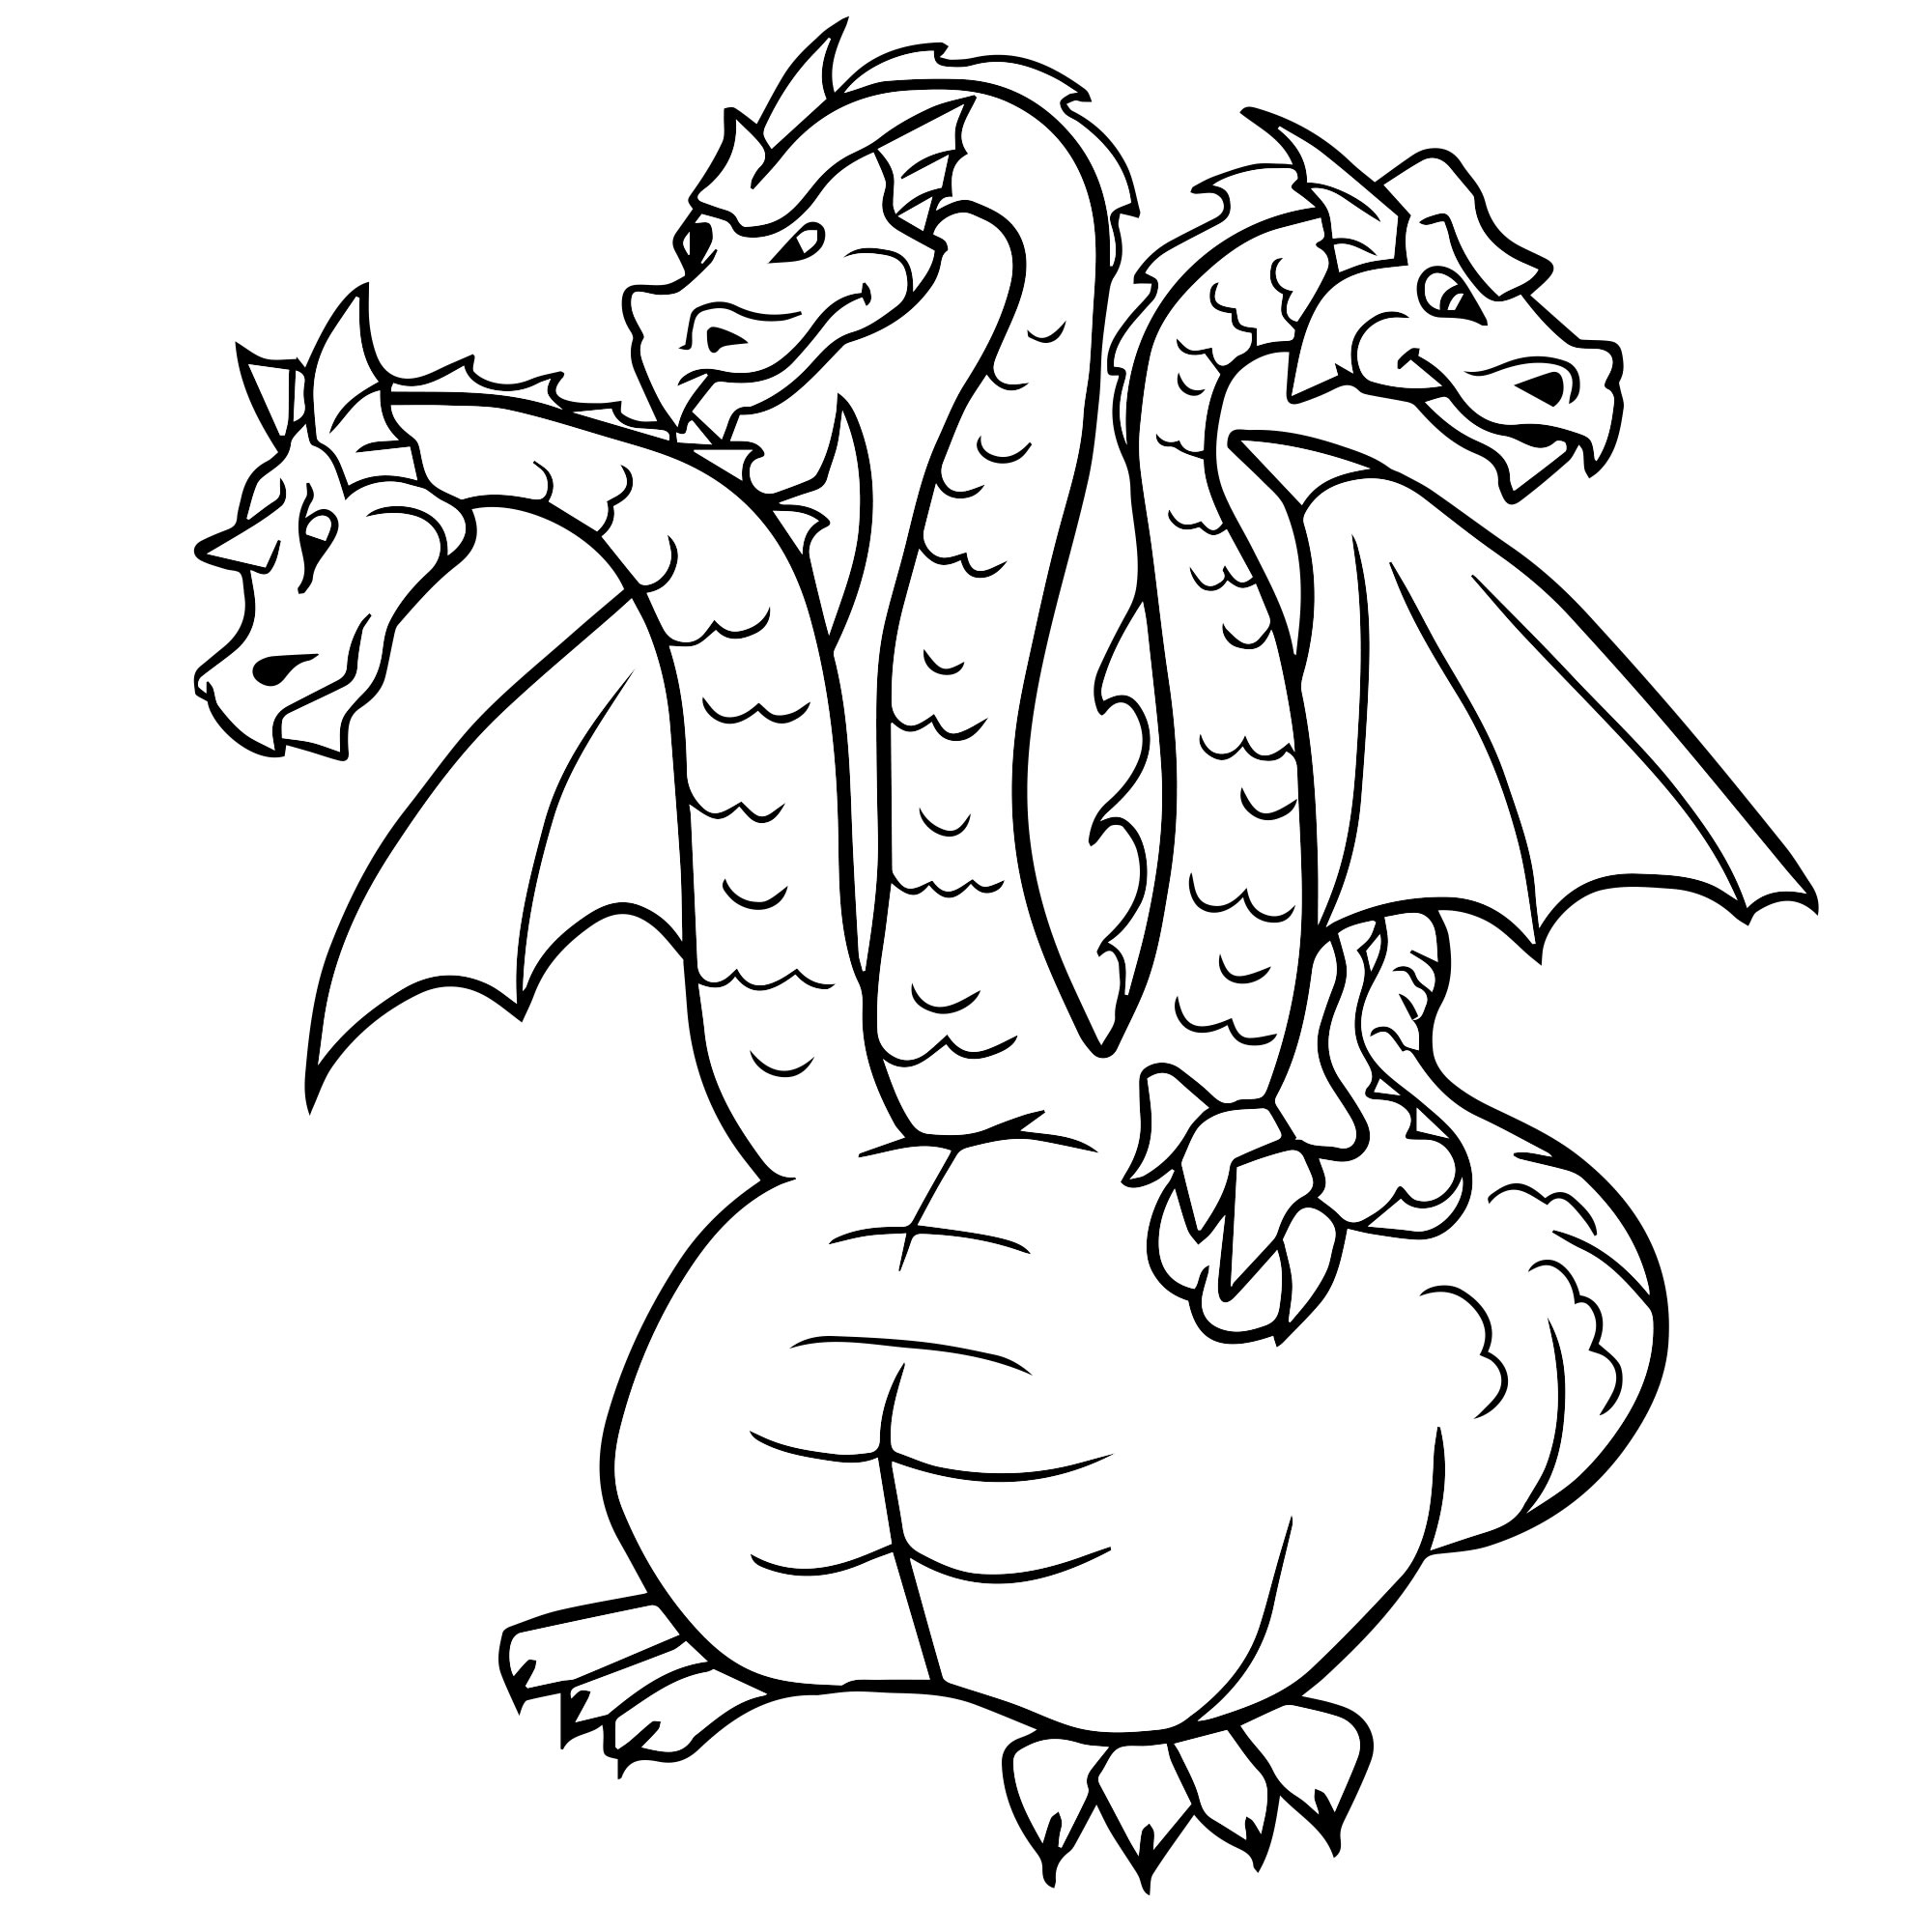 Злой дракон мультяшный раскраски для детей